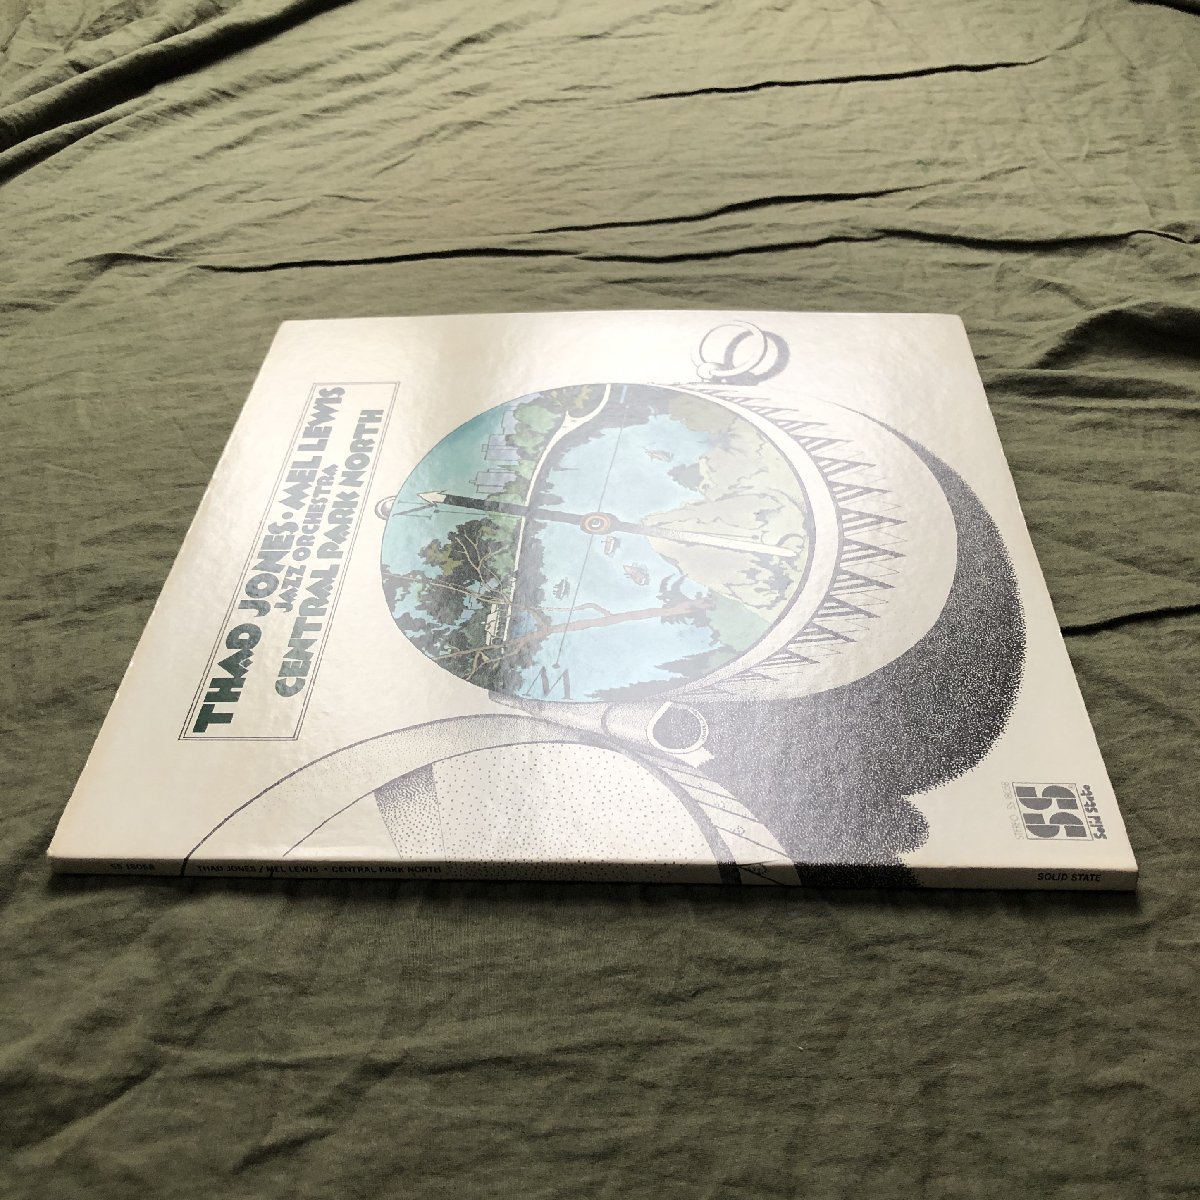 原信夫Collection 傷なし美盤 良ジャケ 1969年 米国 本国オリジナルリリース盤 Thad Jones / Mel Lewis LPレコード Central Park North_画像3